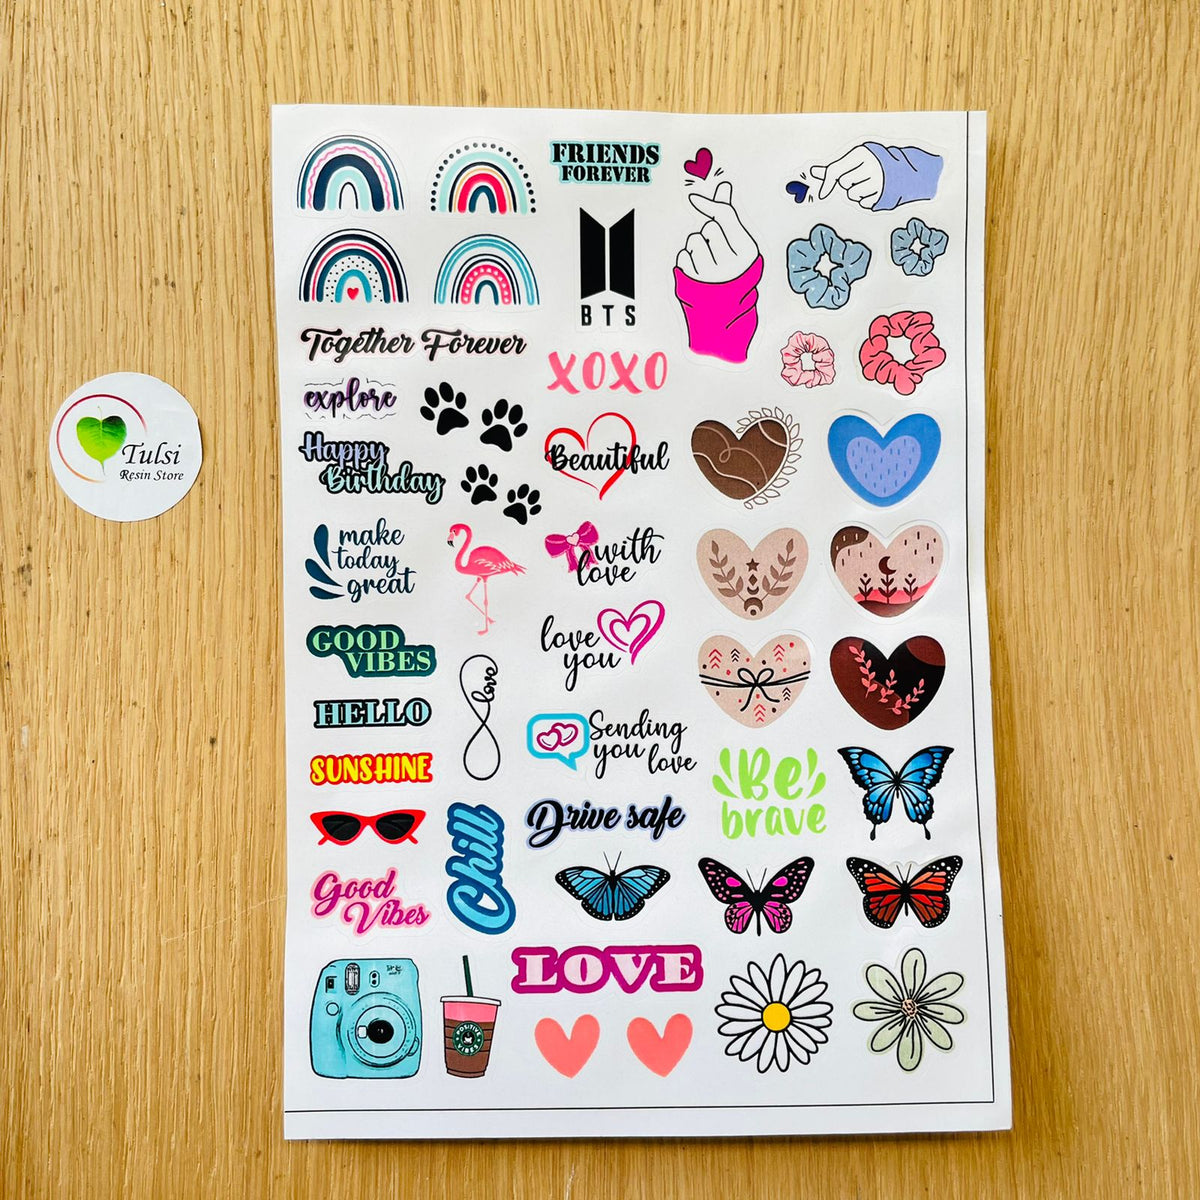 Aesthetic White Sticker Sheet – Tulsi Resin Store